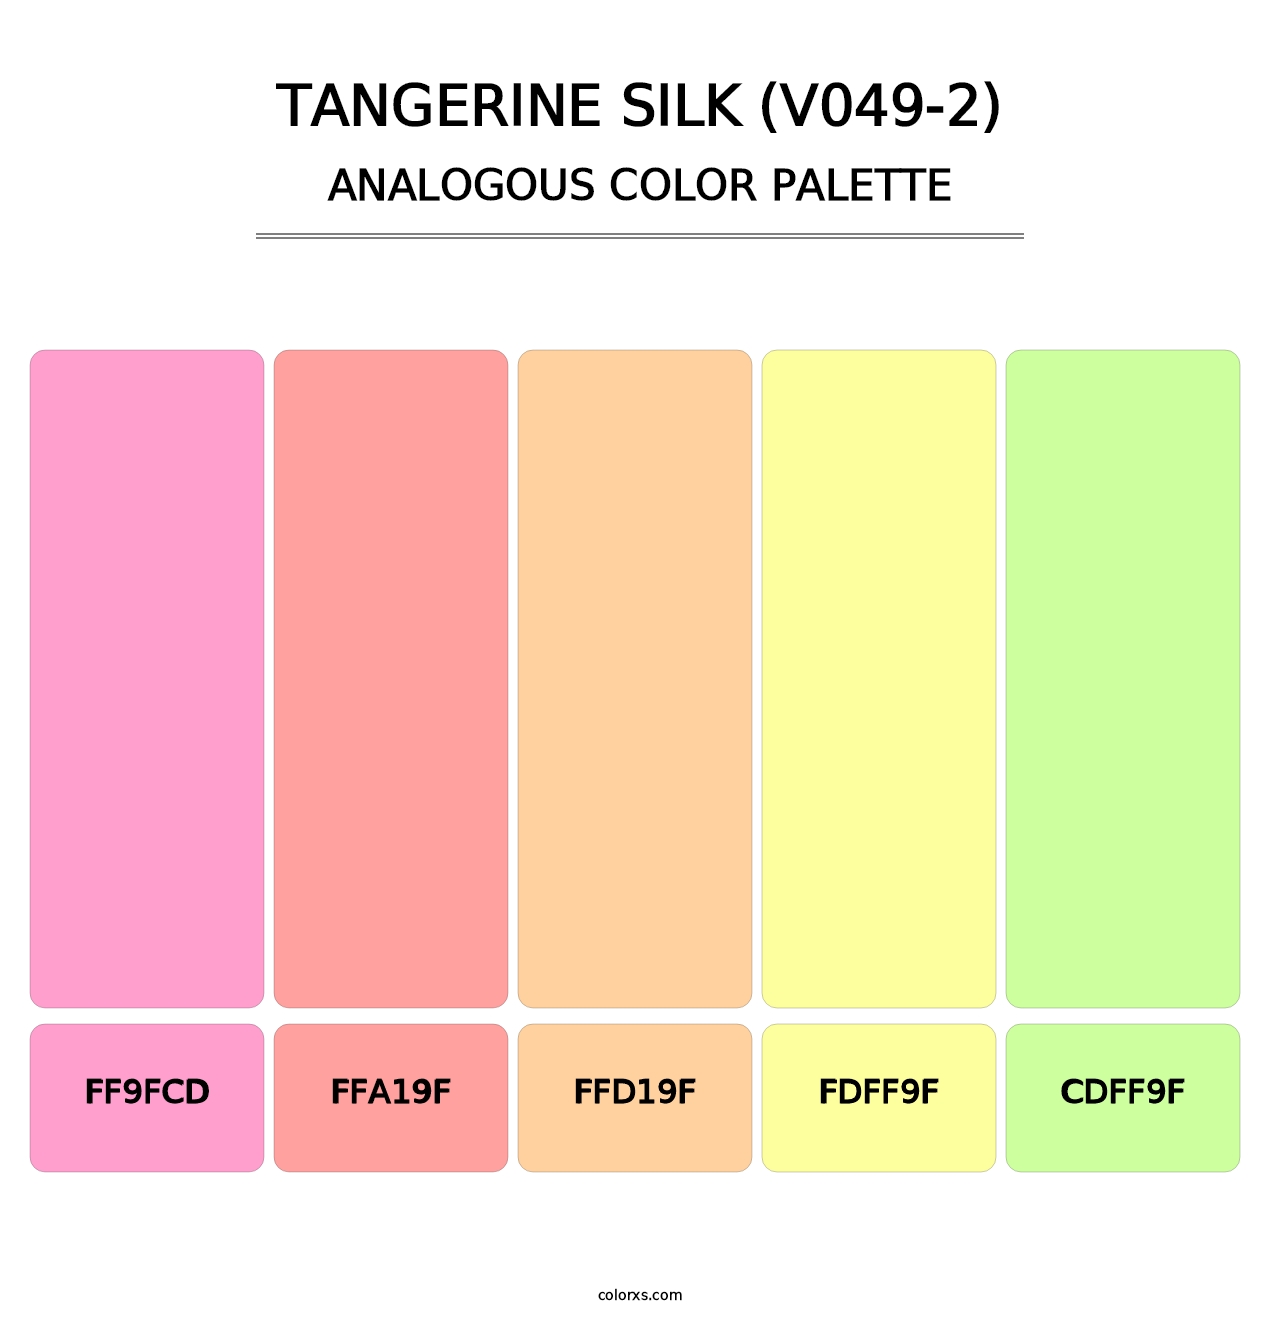 Tangerine Silk (V049-2) - Analogous Color Palette